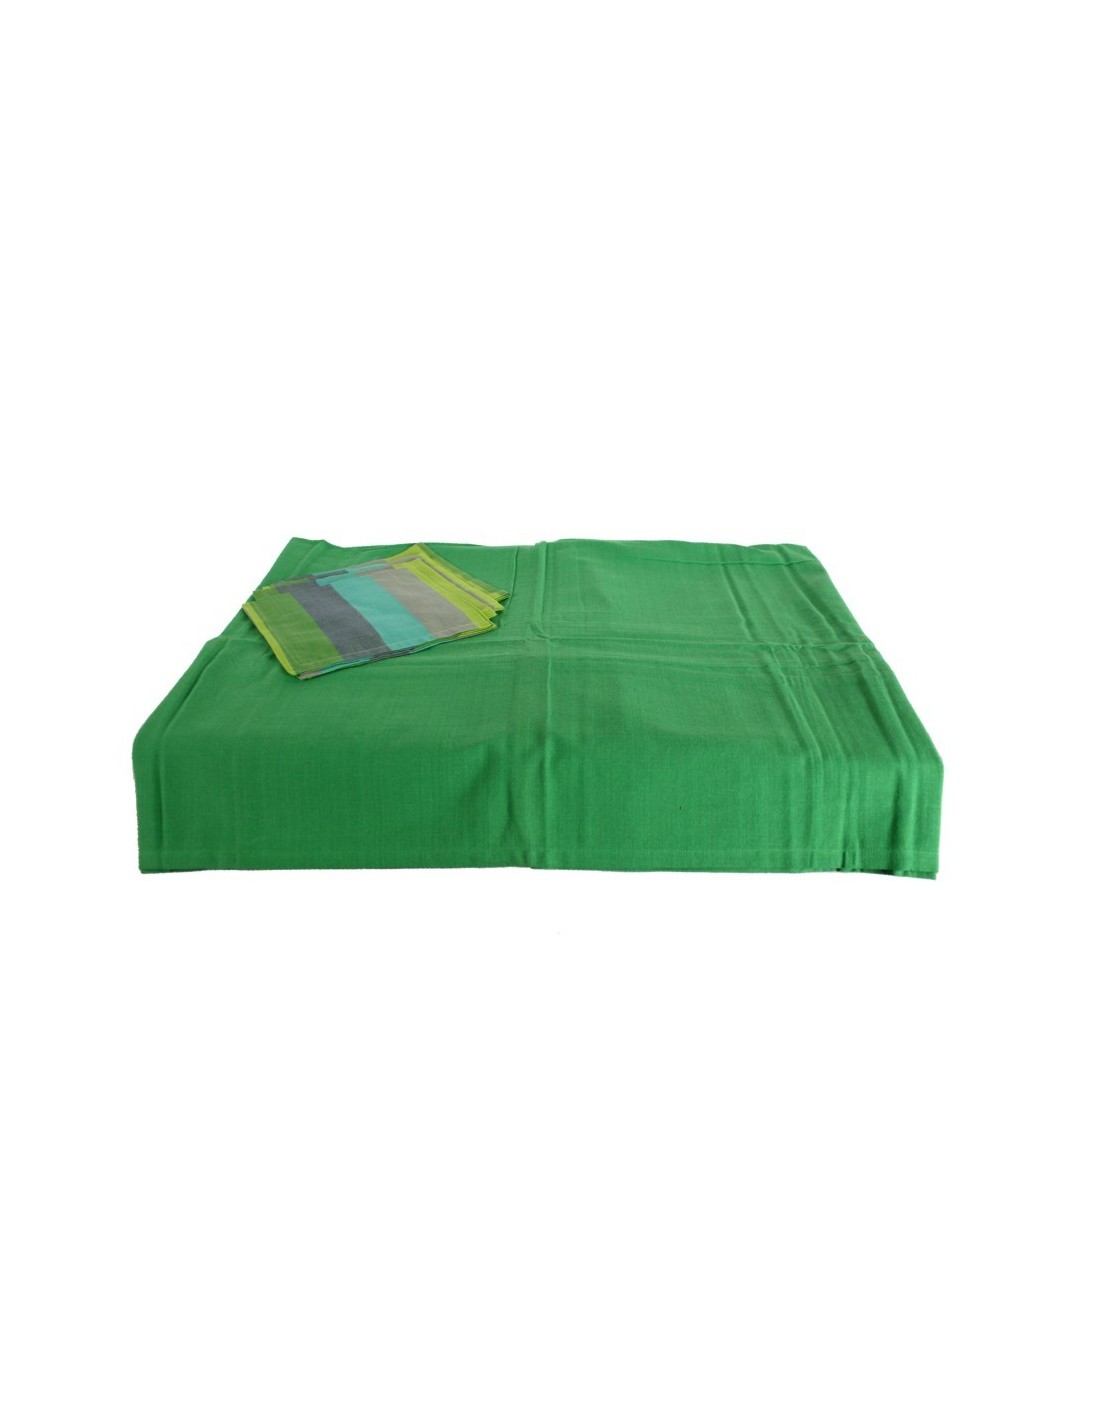 Mantel color verde con 4 servilletas a juego para vestir tu mesa